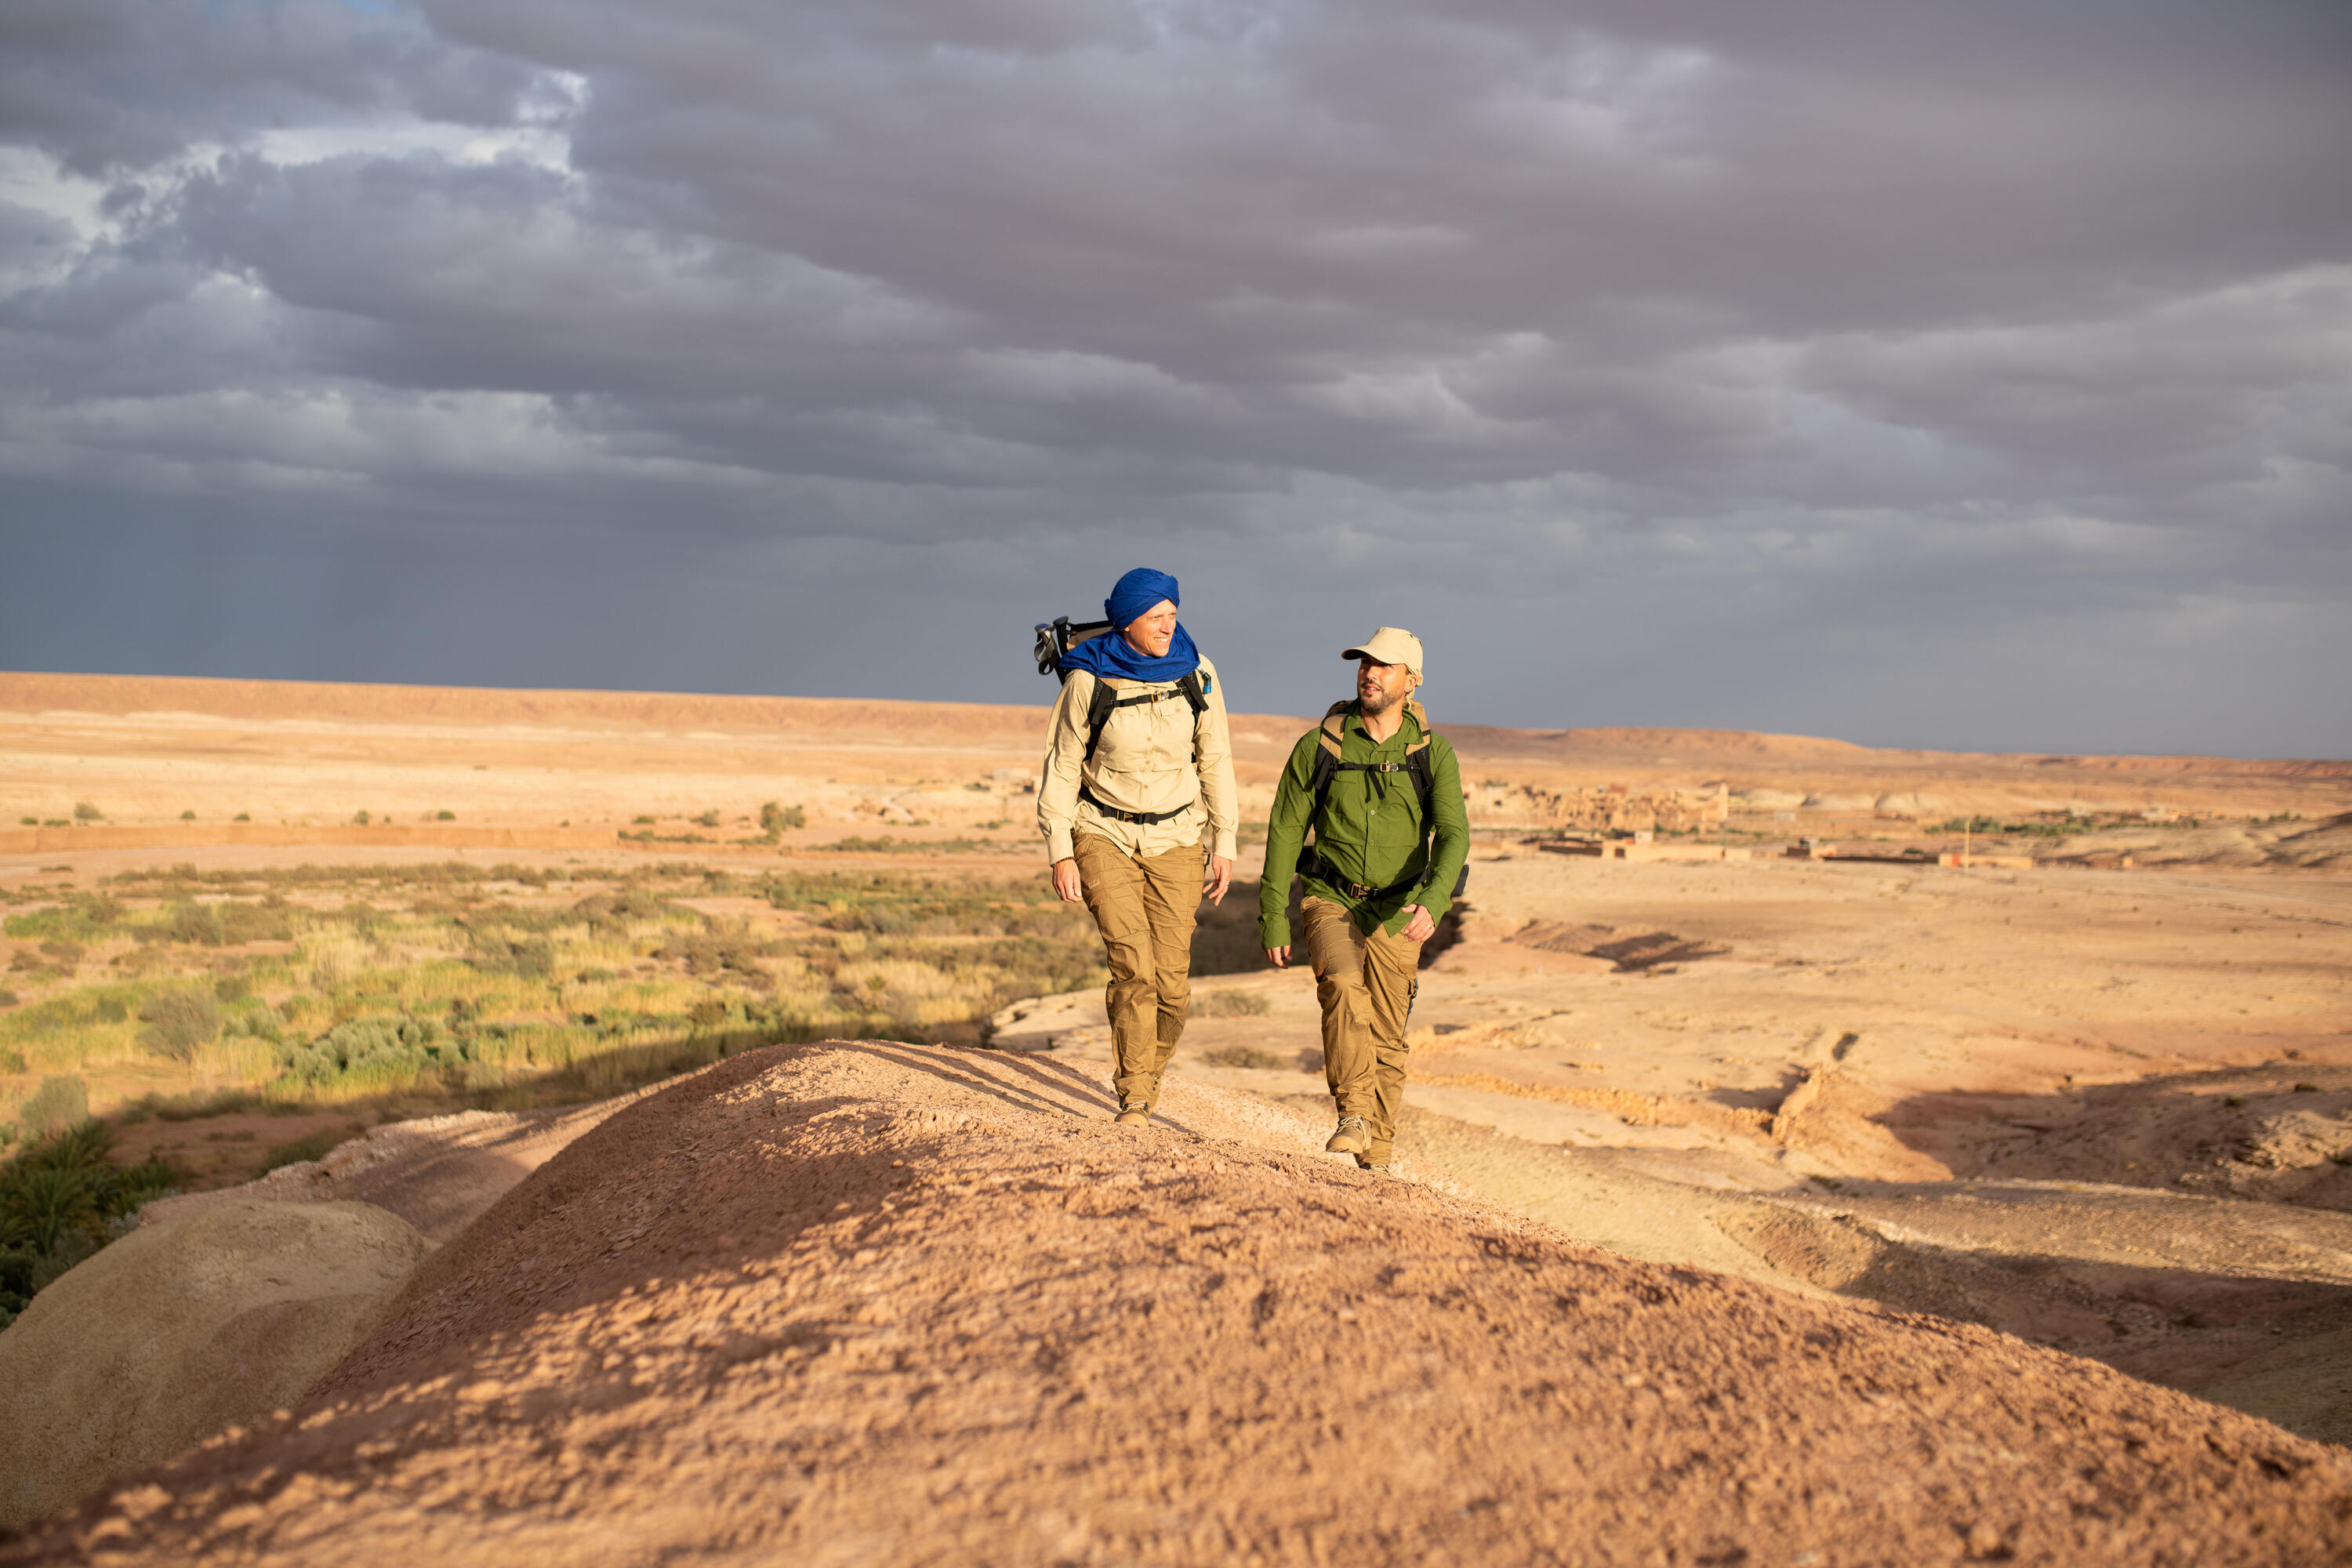 Women's Travel 900 Desert Trekking Long-Sleeved UV Protection Shirt  2/19